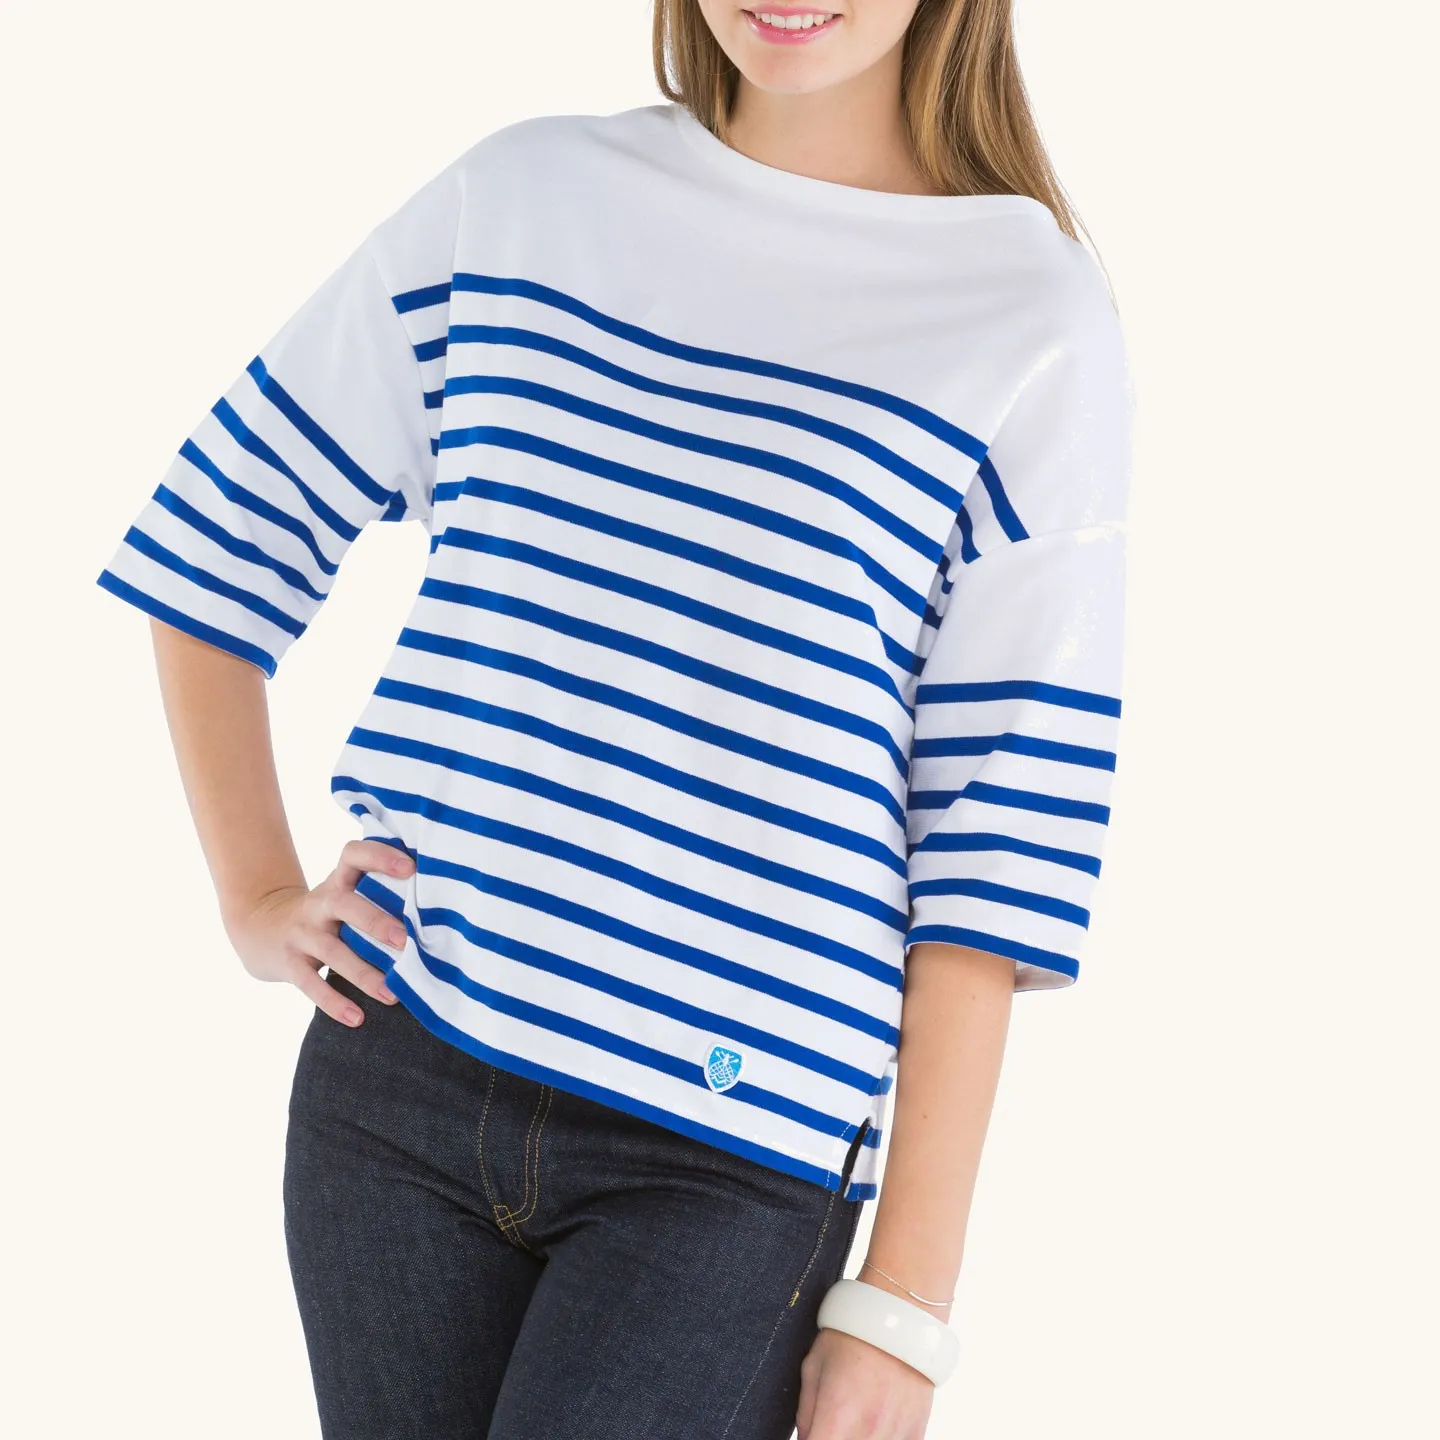 Drop-Shoulders Women's Striped shirt White / Blue Orcival